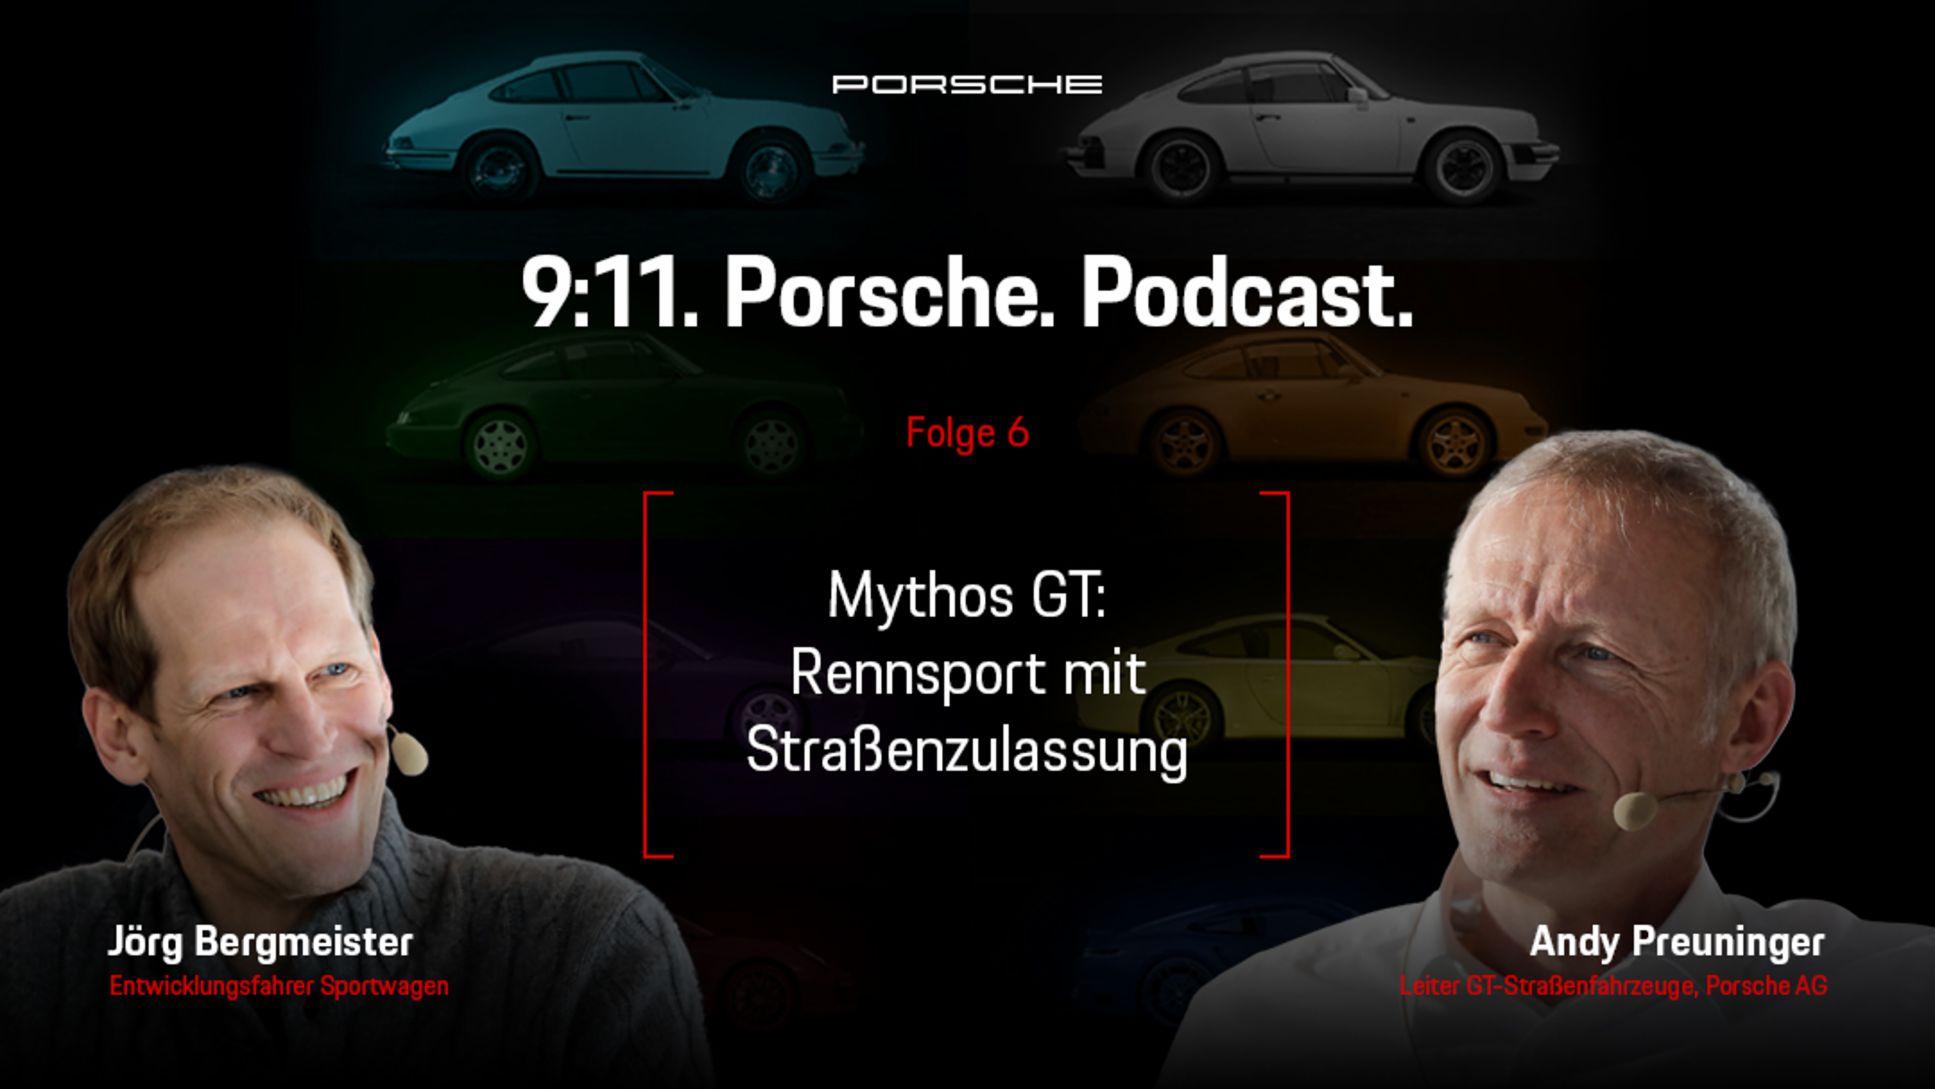 Jörg Bergmeister, Entwicklungsfahrer Sportwagen und Porsche-Markenbotschafter, Andreas Preuninger, Leiter GT Strassenfahrzeuge, l-r, Podcast 9:11, Folge 6, 2021, Porsche AG